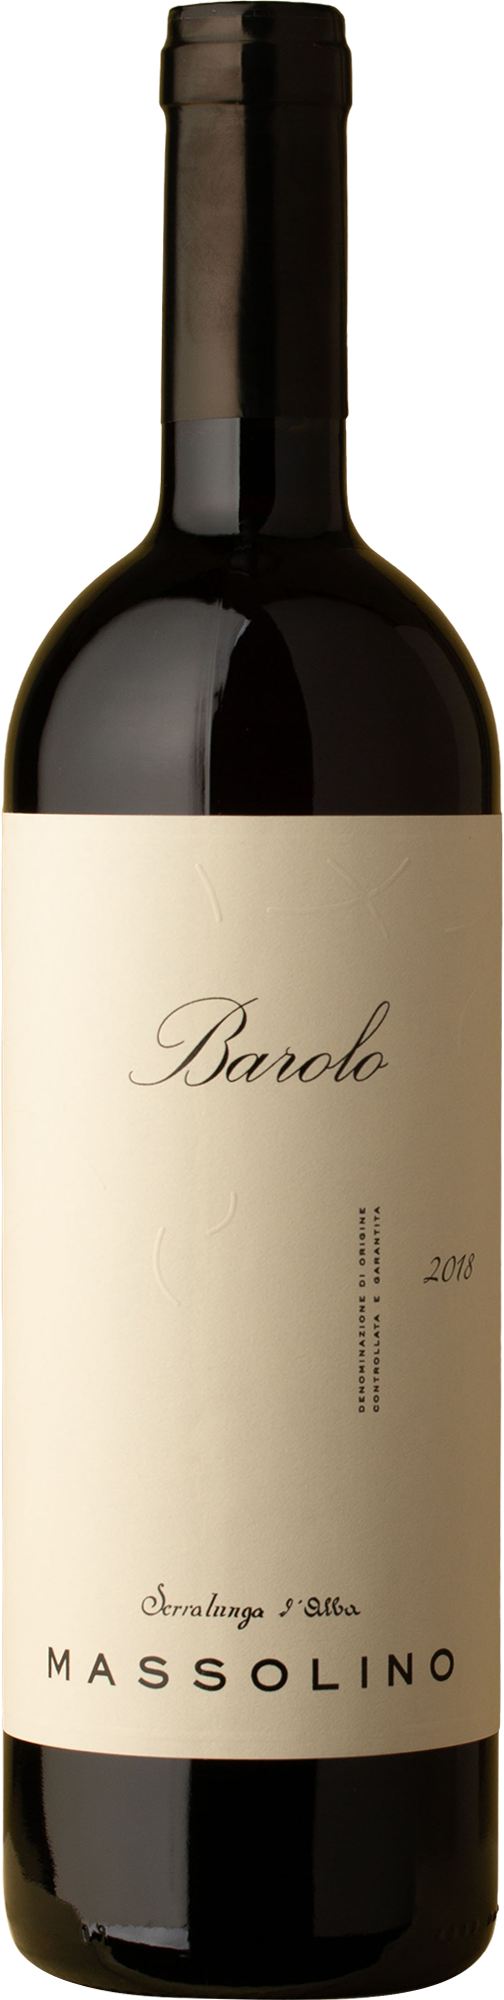 Massolino - Barolo Nebbiolo 2018 Red Wine